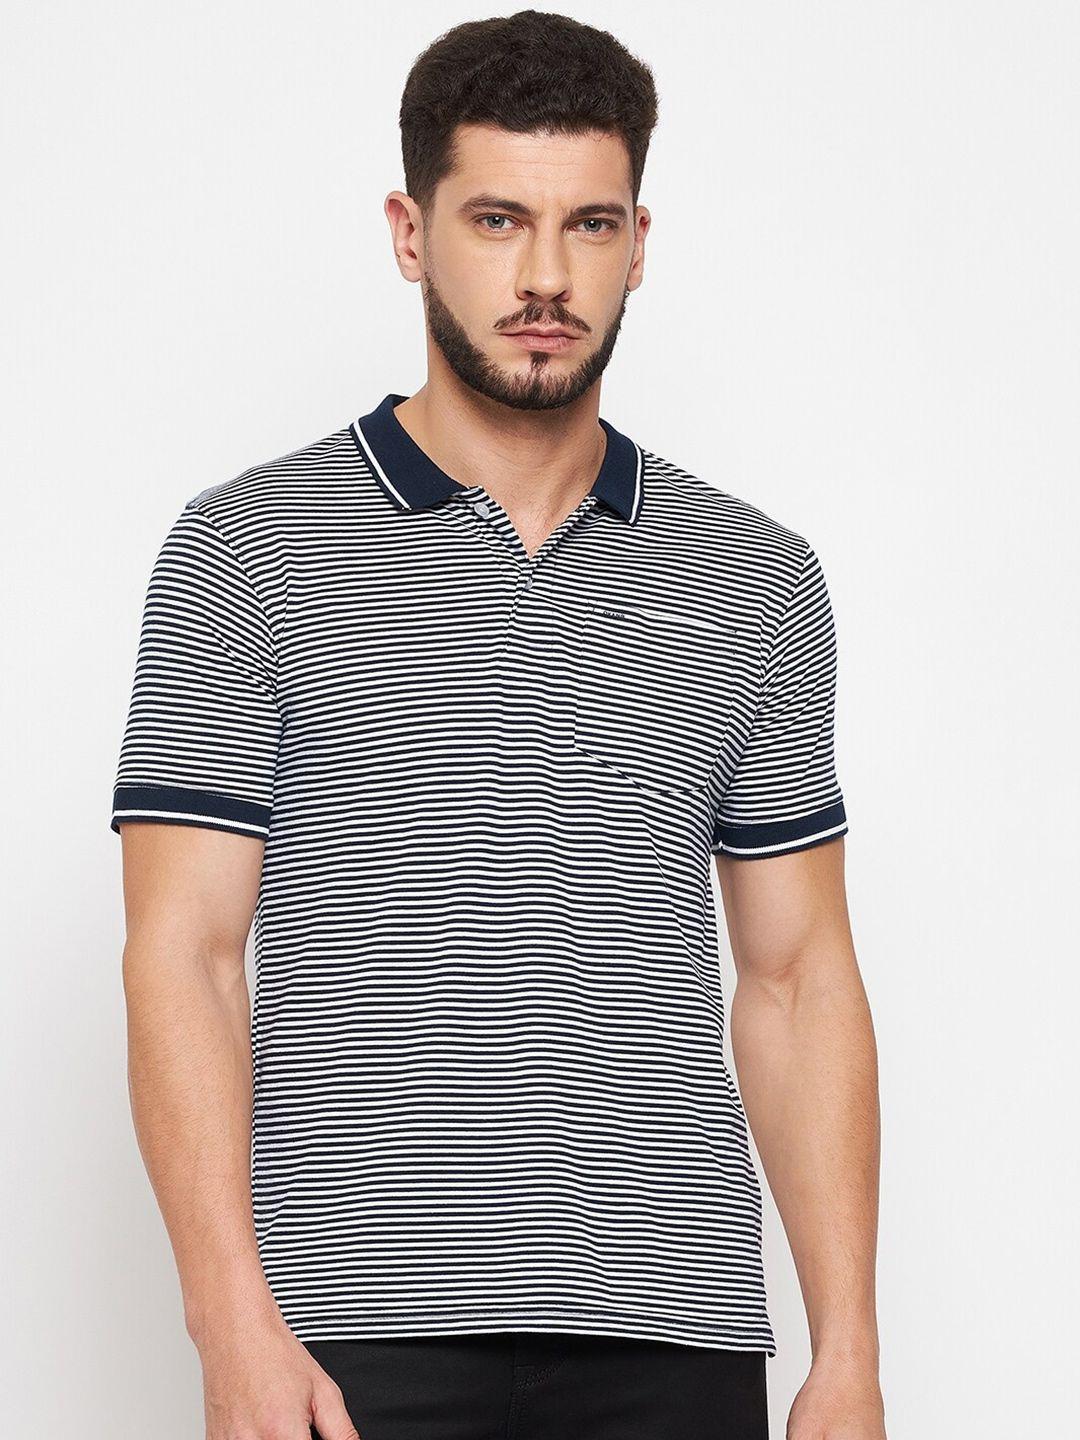 okane-men-navy-blue-striped-polo-collar-t-shirt